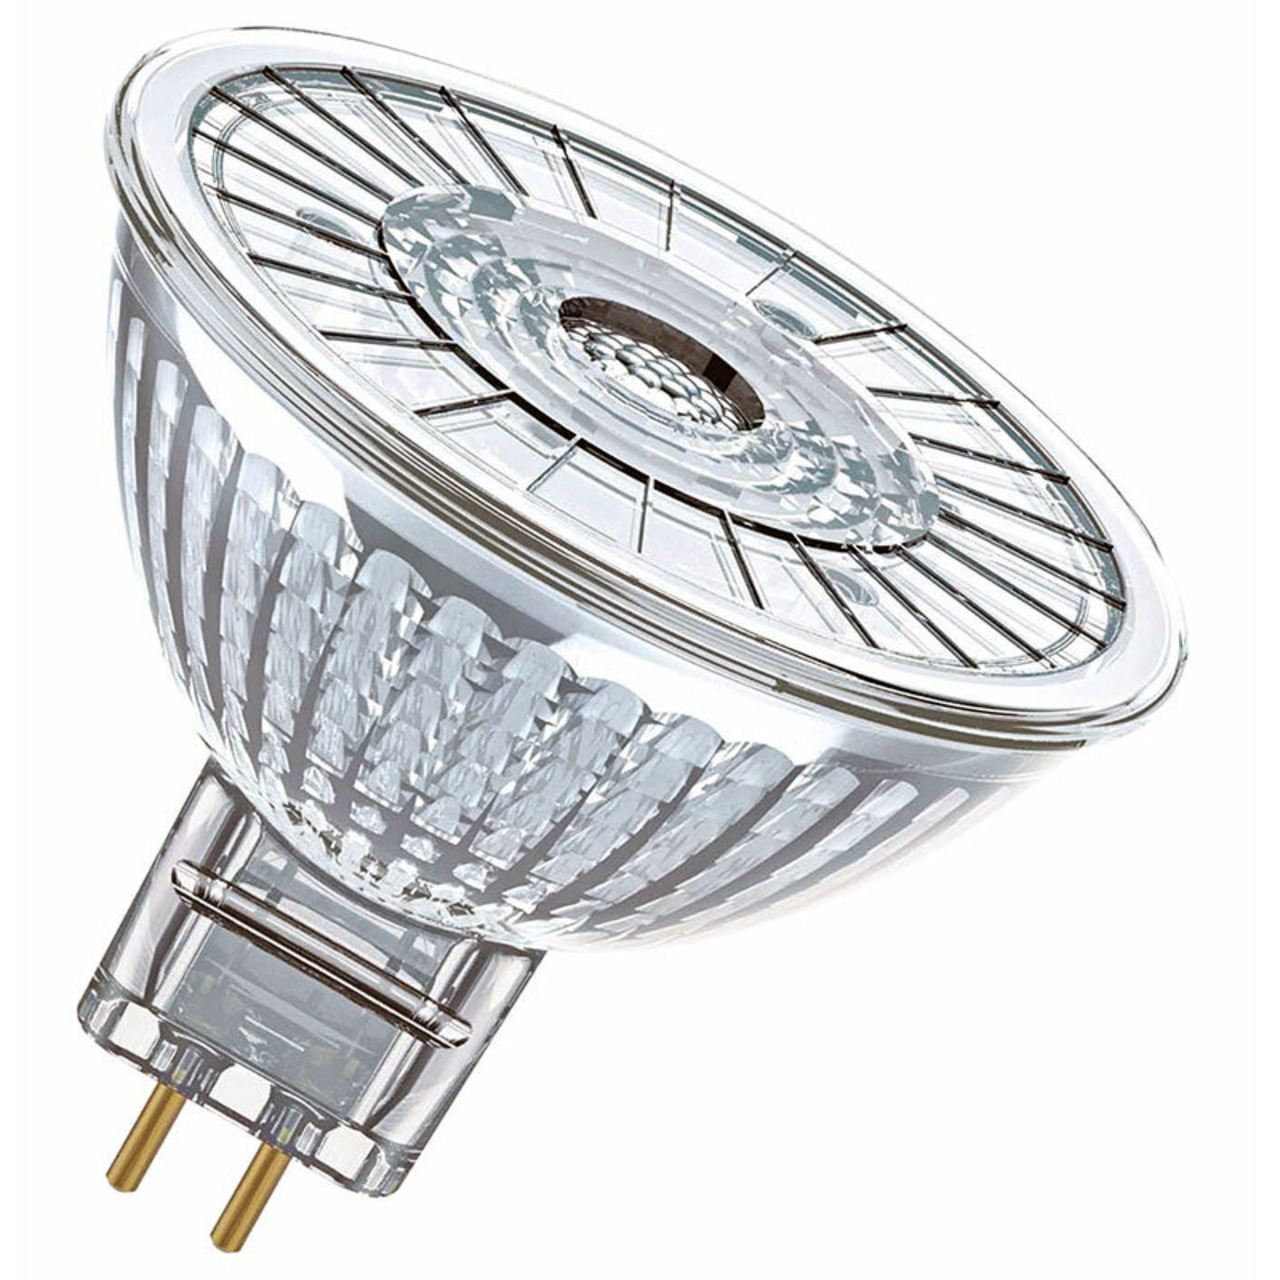 OSRAM LED SUPERSTAR 4-9-W-GU5-3-LED-Lampe- warmweiss- dimmbar- 12 V unter Beleuchtung